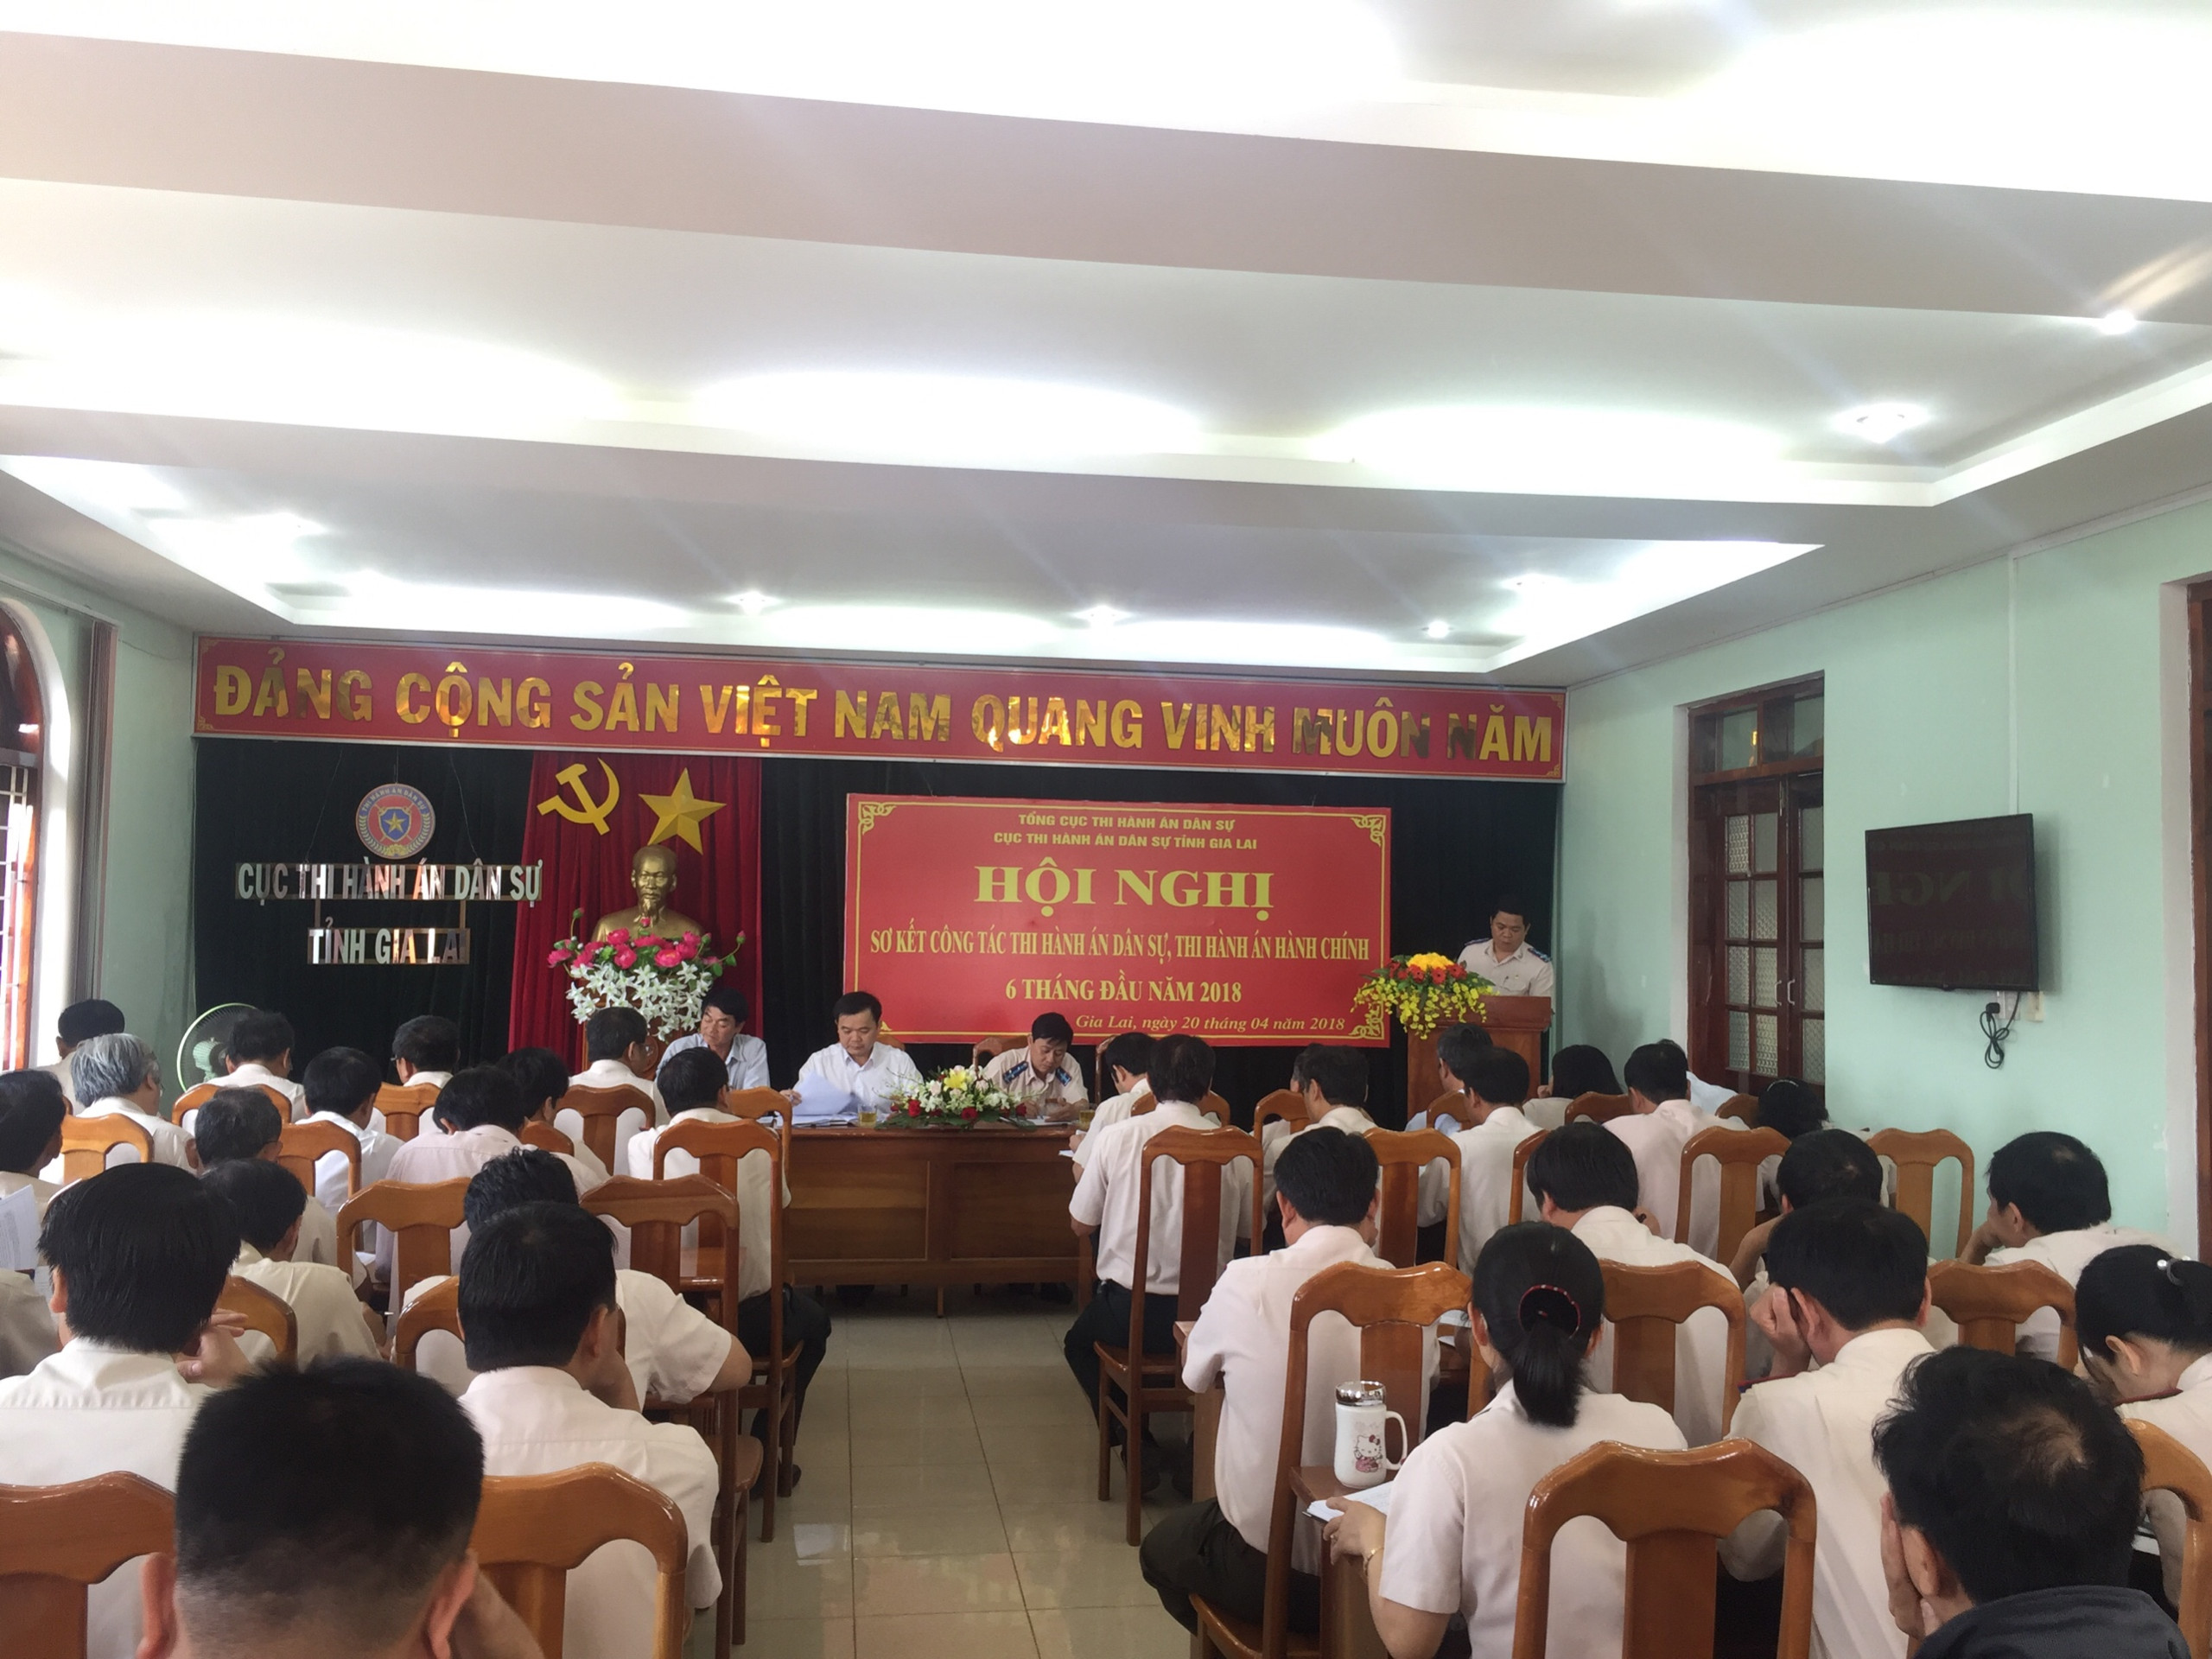 Cục Thi hành án dân sự tỉnh Gia Lai tổ chức Hội nghị sơ kết công tác Thi hành án dân sự, Thi hành án hành chính 6 tháng đầu năm 2018